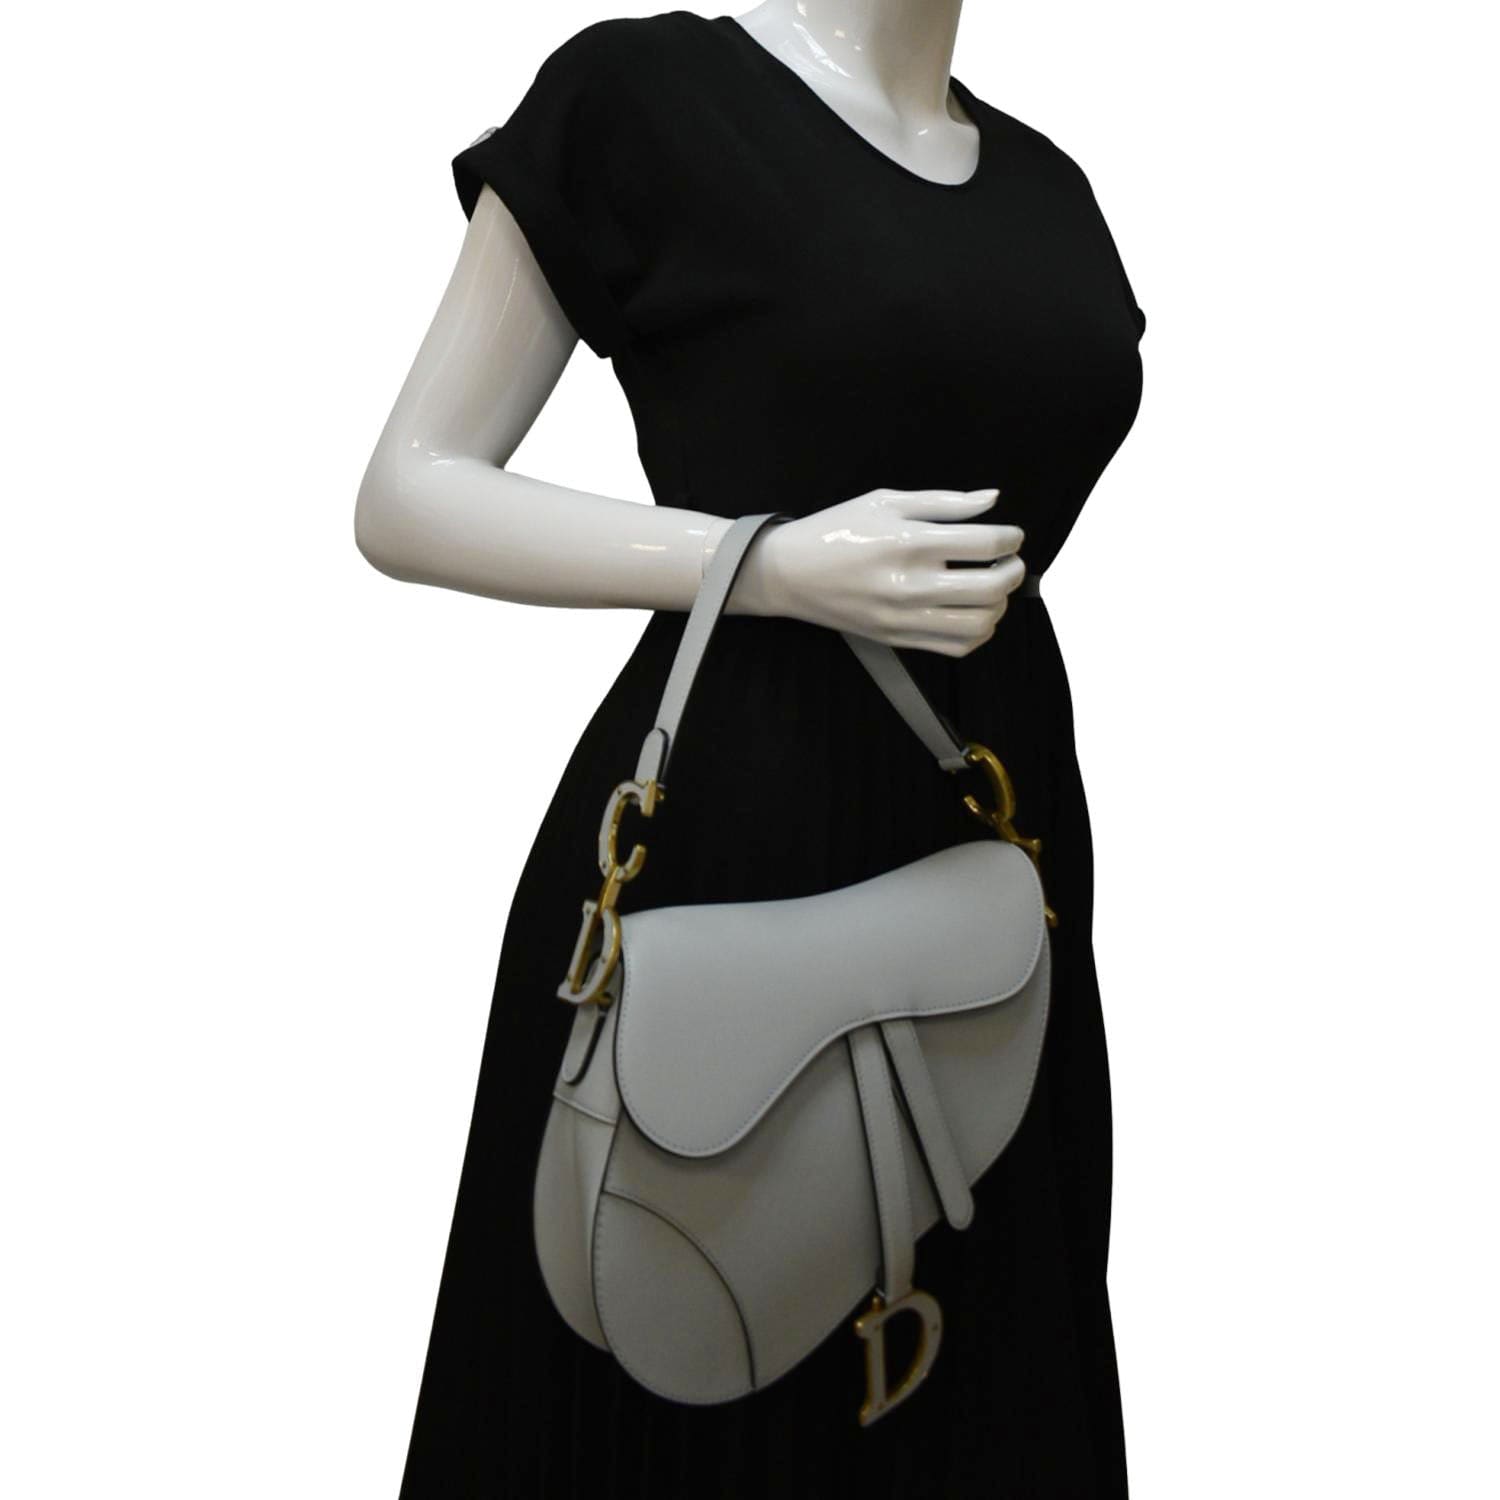 Christian-Dior-Saddle-Bag-Leather-Shoulder-Bag-Hand-Bag-Black